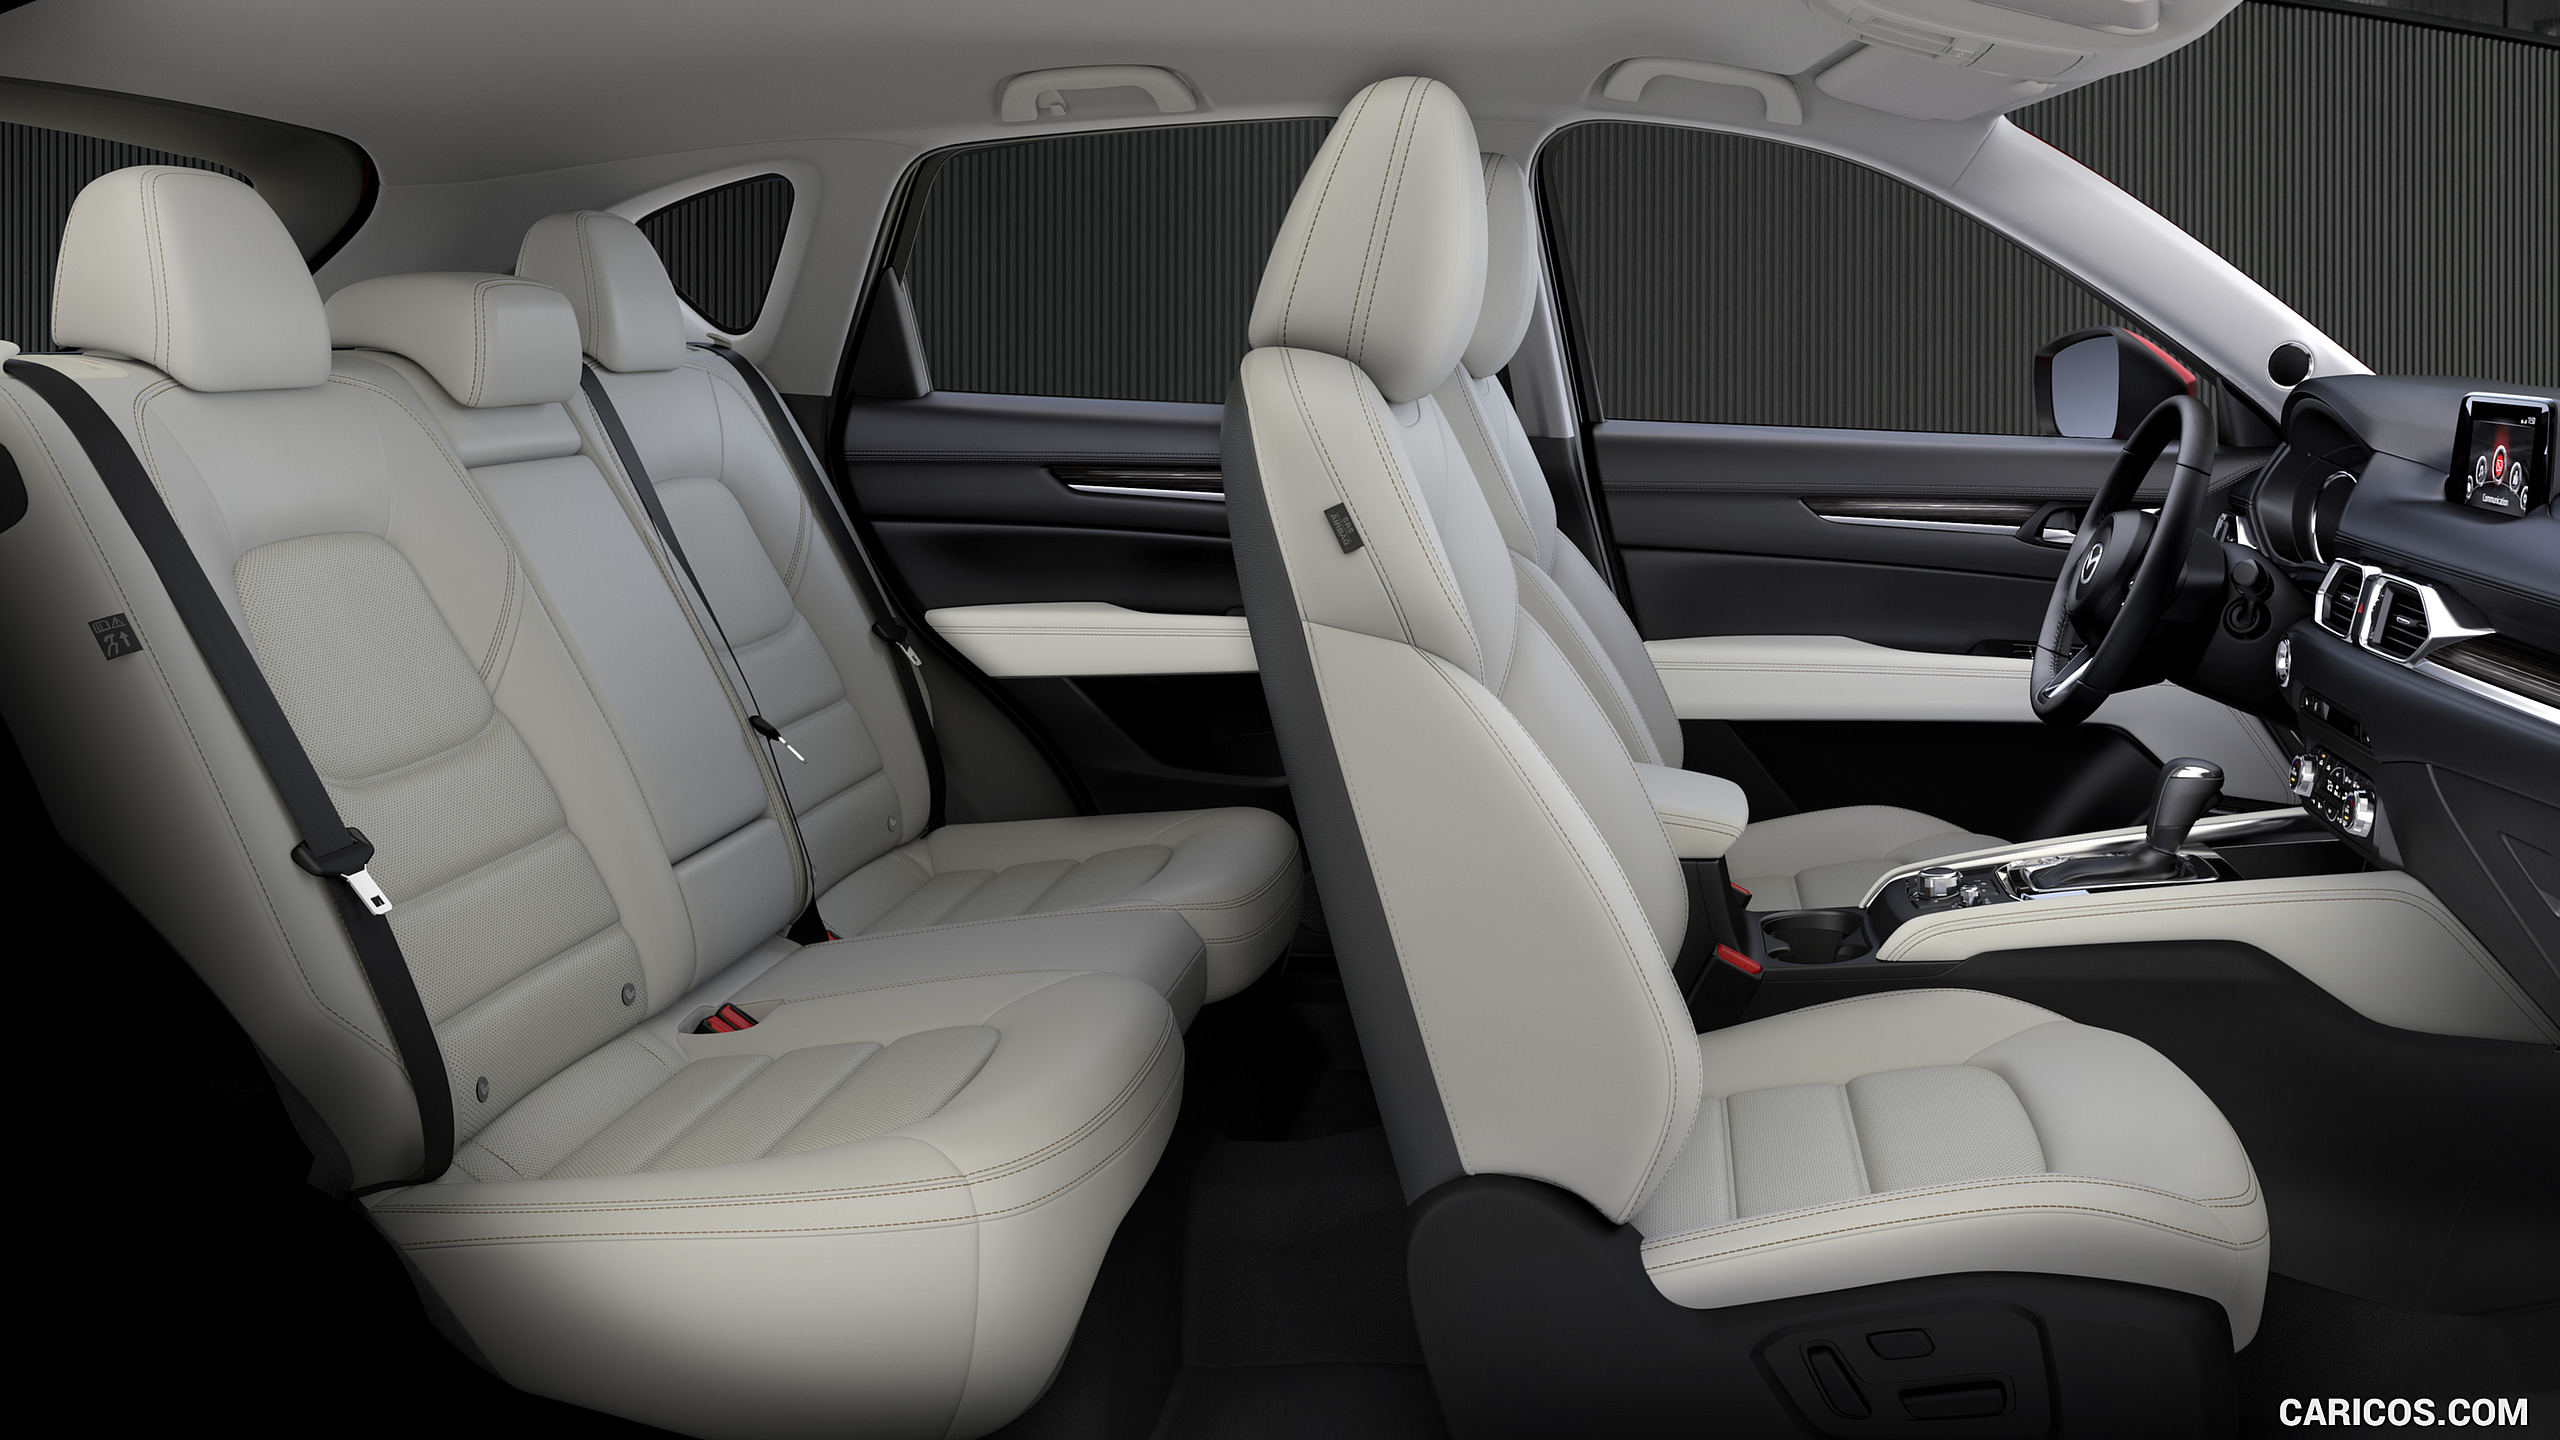 2017 Mazda CX-5 - Interior, Seats, #41 of 42